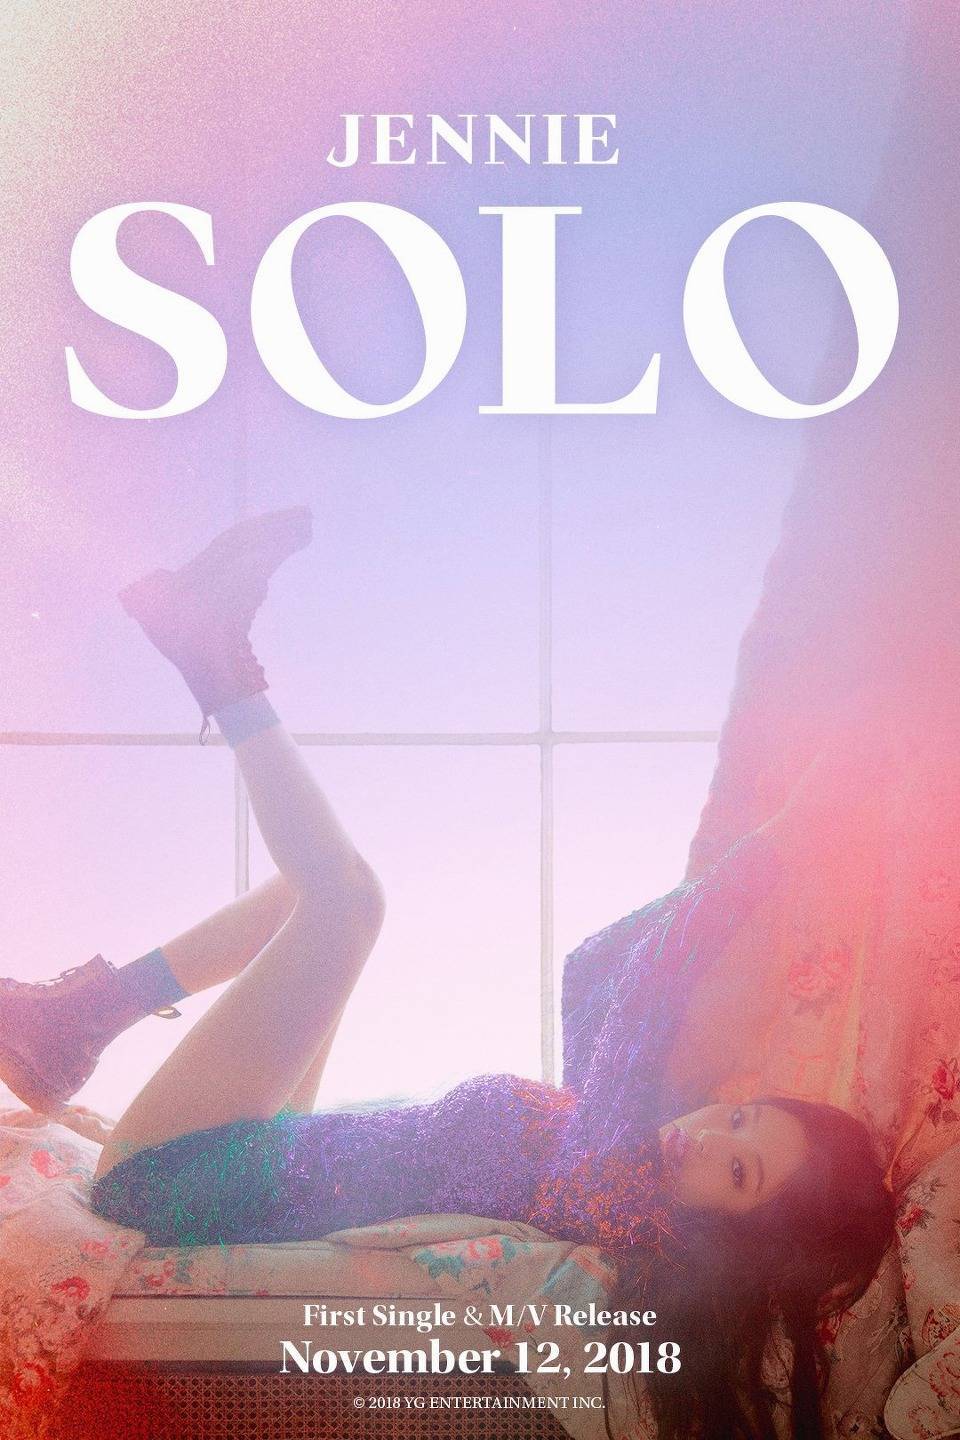 블랙핑크 제니 디지털 싱글 'SOLO(솔로)' 티저 포스터 | 인스티즈